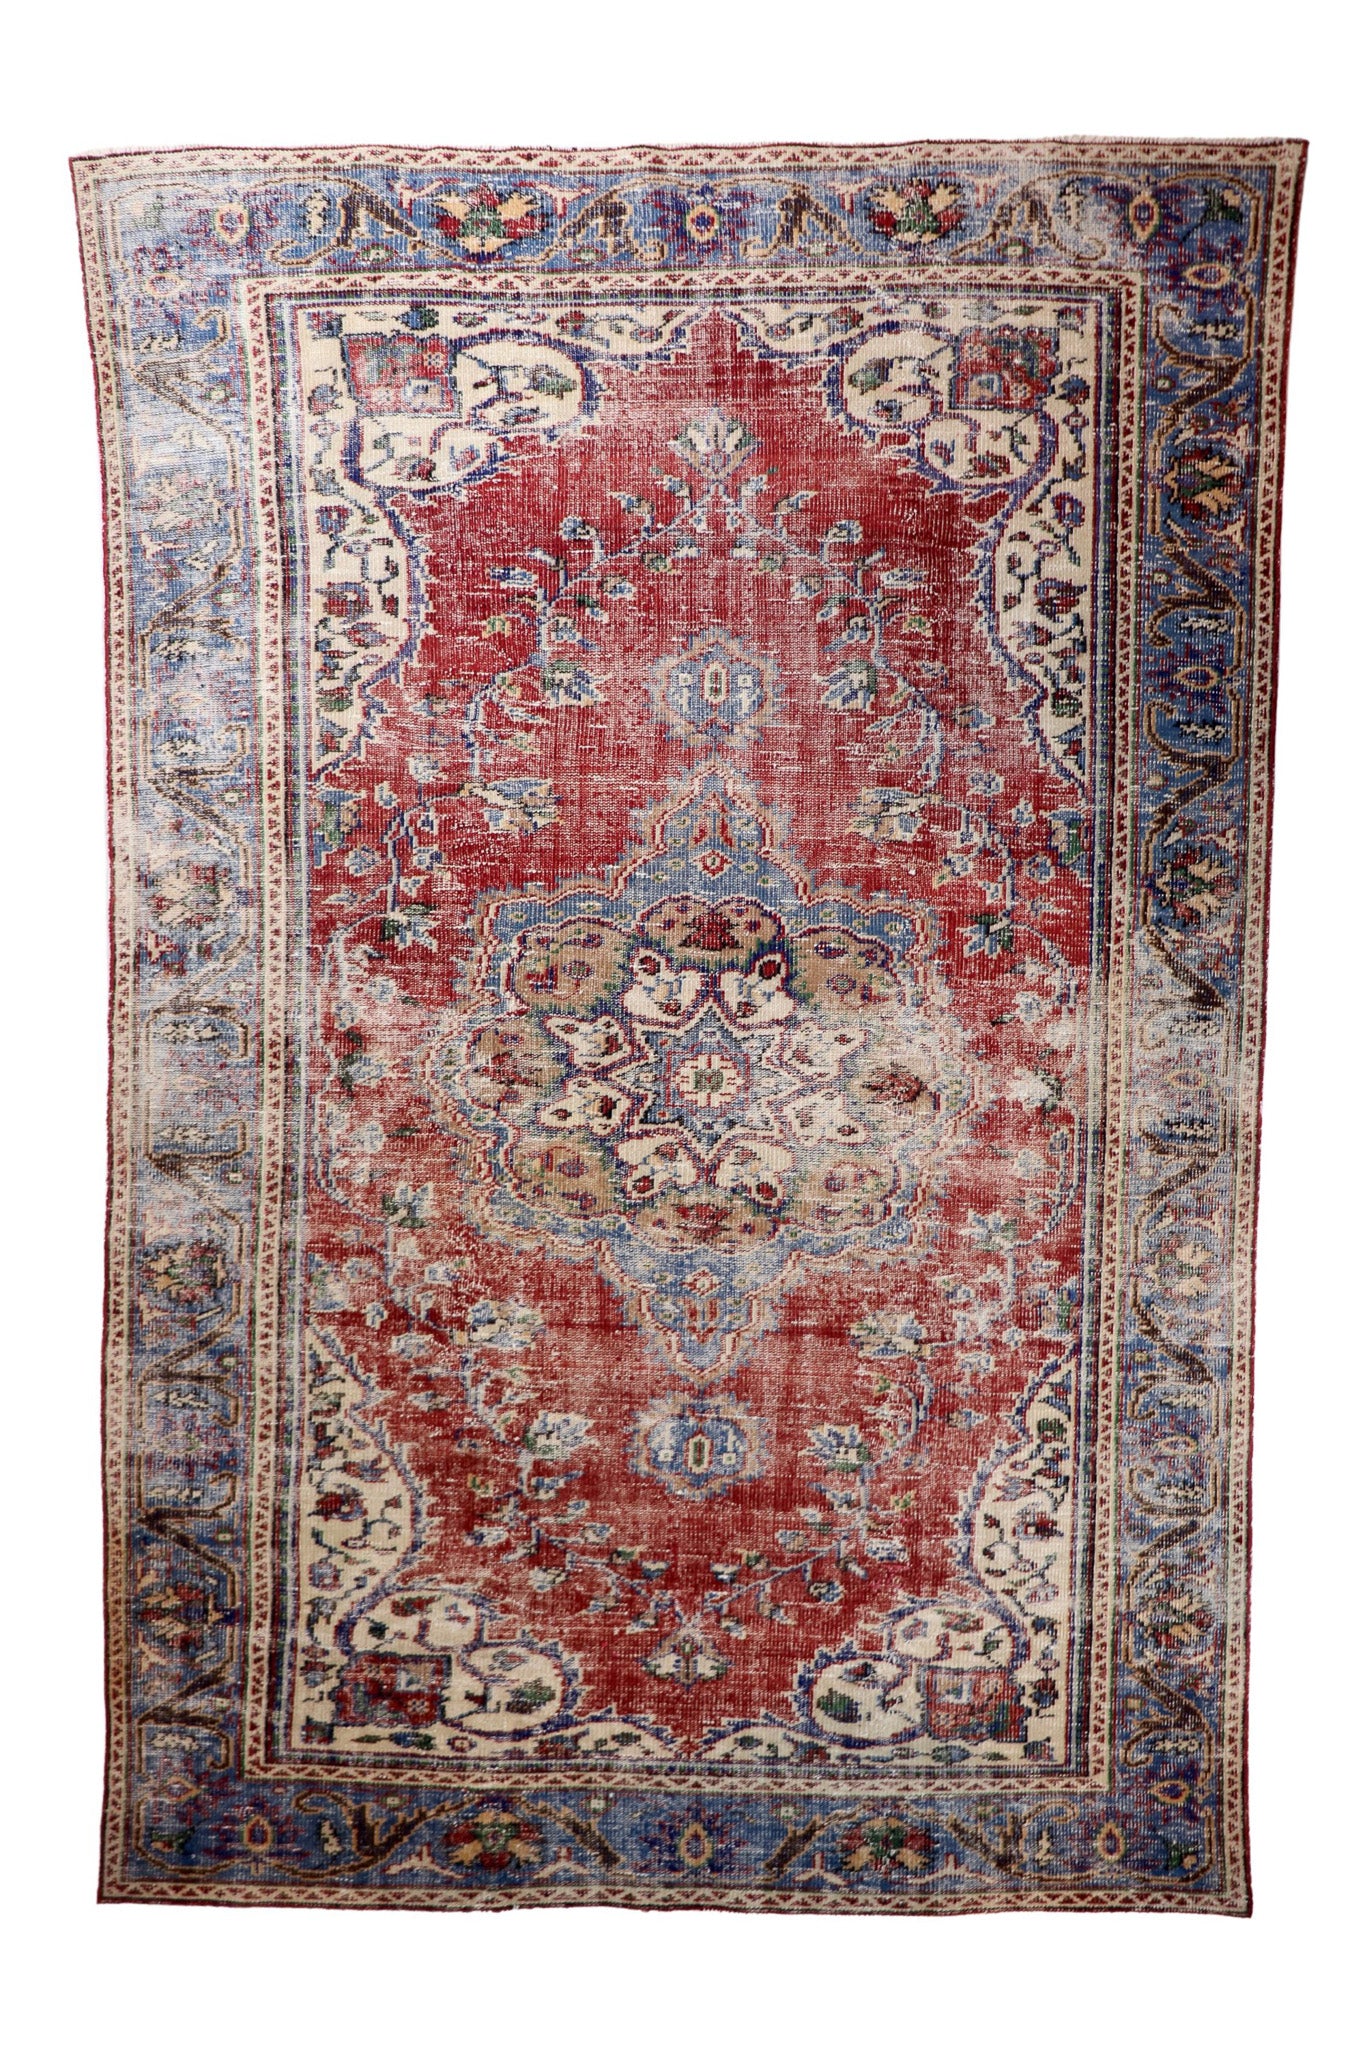 Vintage red & blue rug